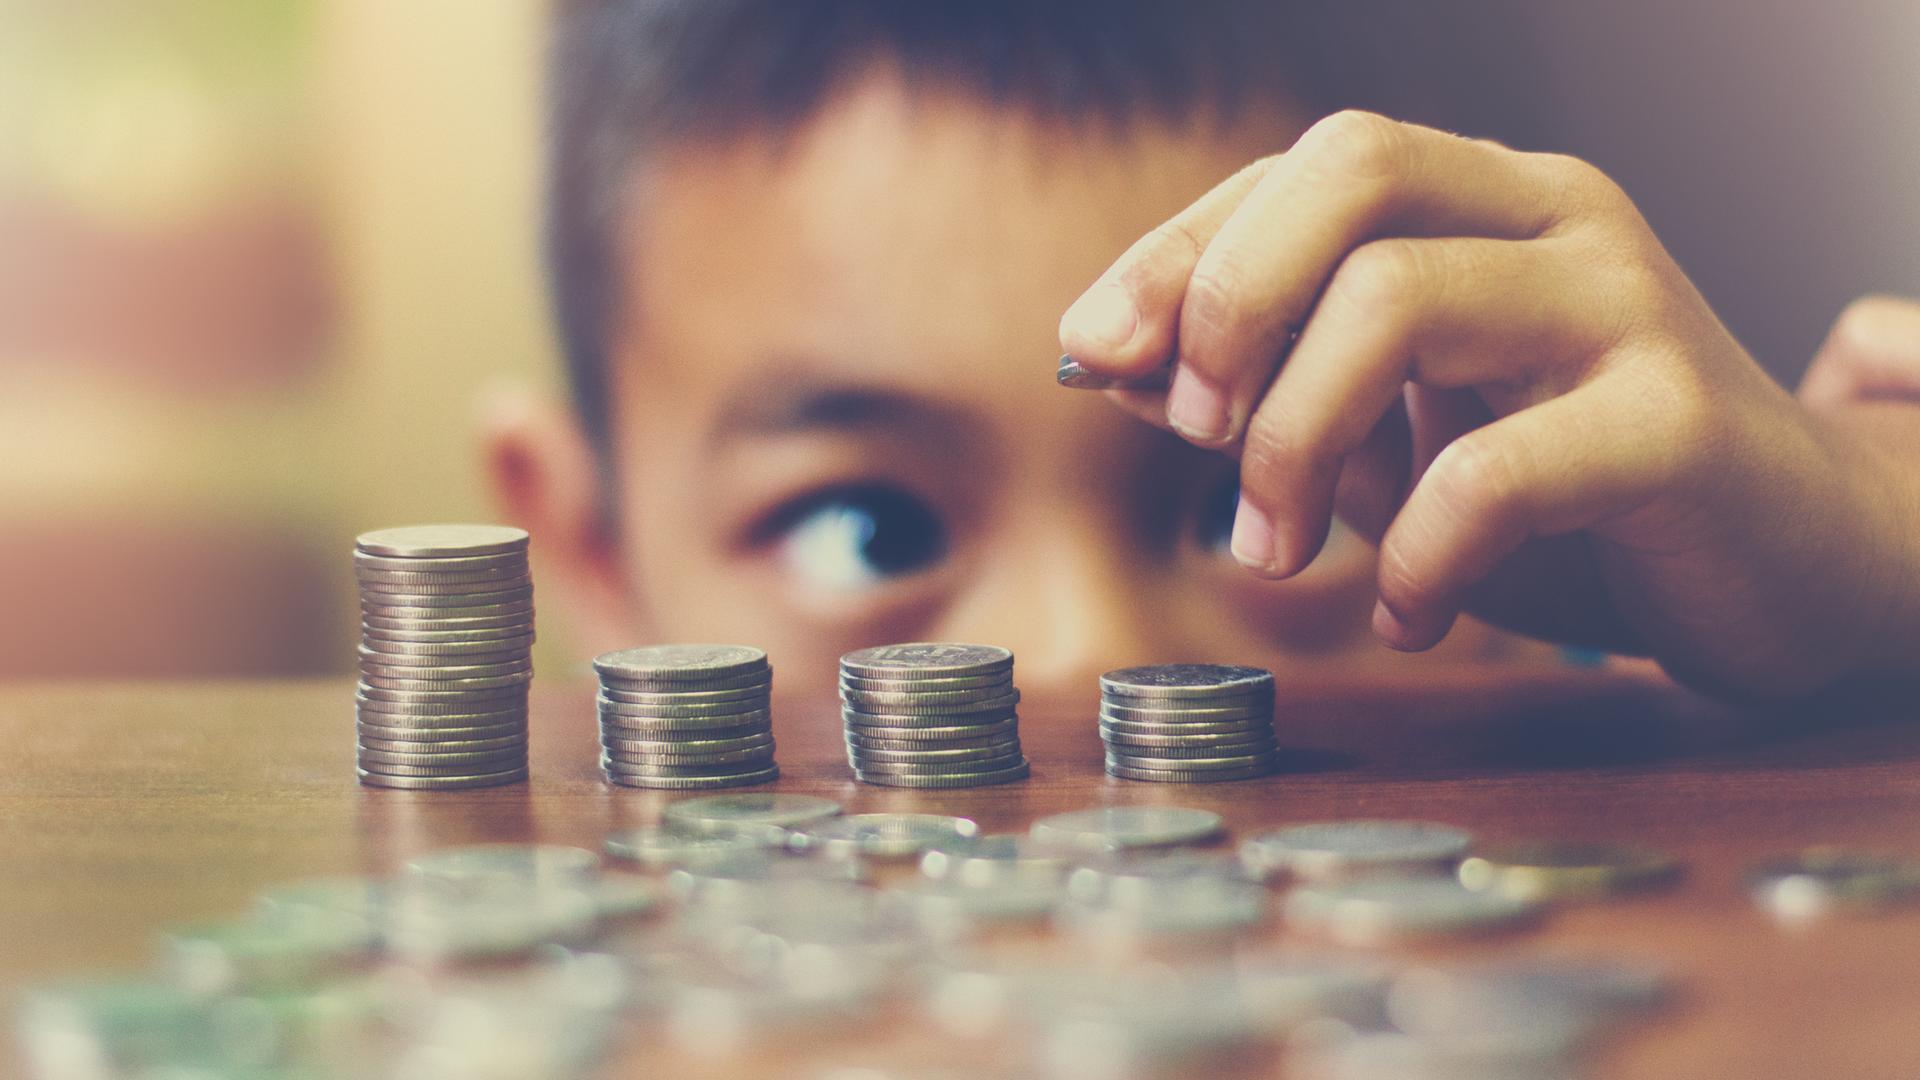 Ein Kind, das gerade eben über die Tischkante schauen kann, stapelt Münzen aufeinander.